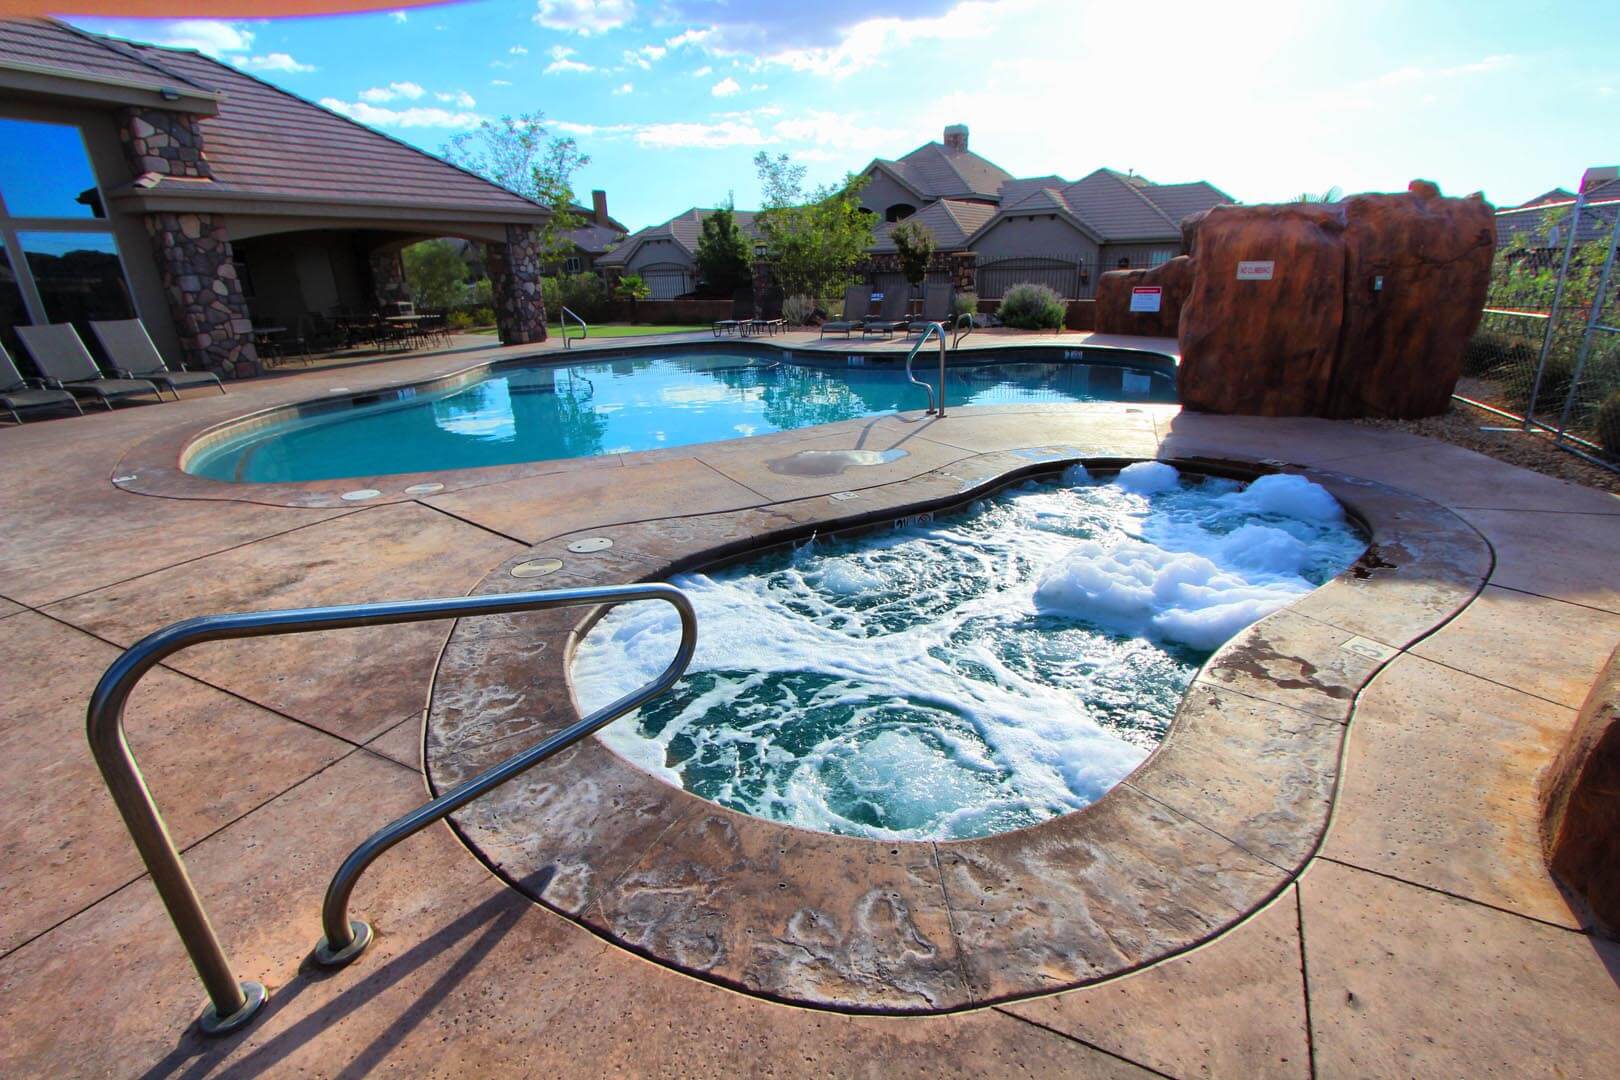 A crisp outdoor swimming pool and Jacuzzi at VRI's Canyon Villas at Coral Ridge in Washington, Utah.